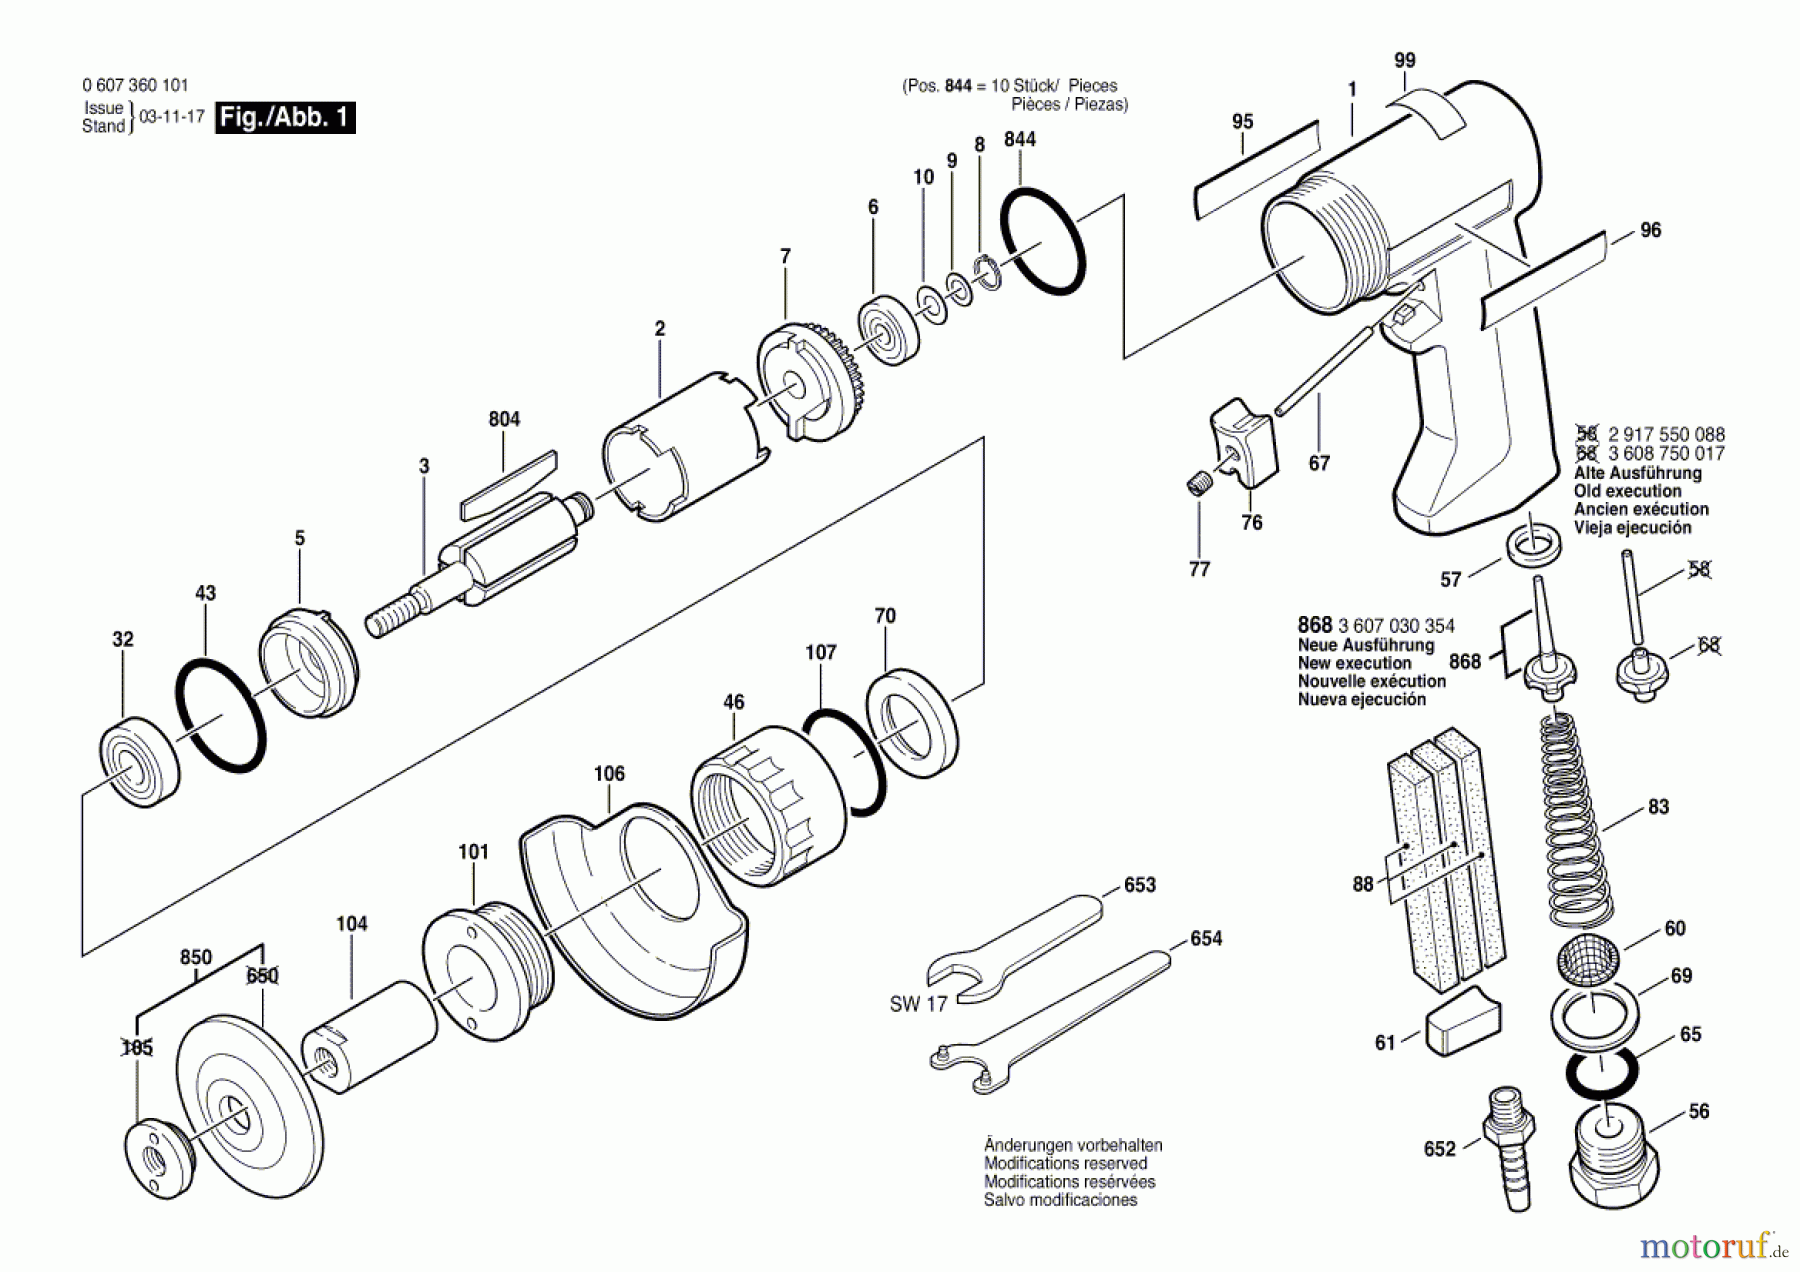  Bosch Werkzeug Pw-Tellerschleifer-Ind 320 WATT-SERIE Seite 1